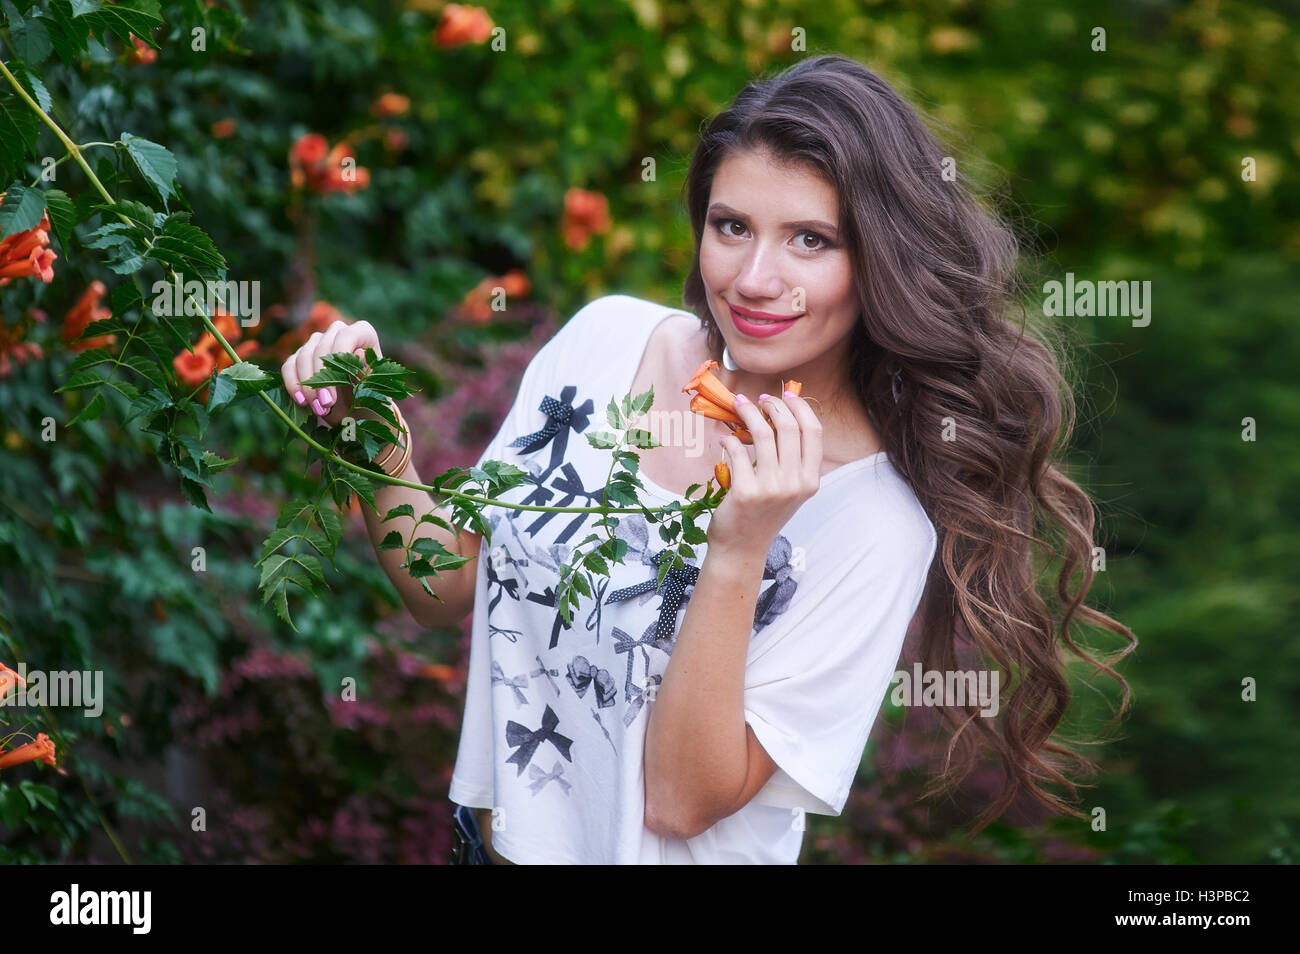 Schöne junge Frau mit langen lockigen Haaren posiert in der Nähe von Blumen in einem Garten Stockfoto